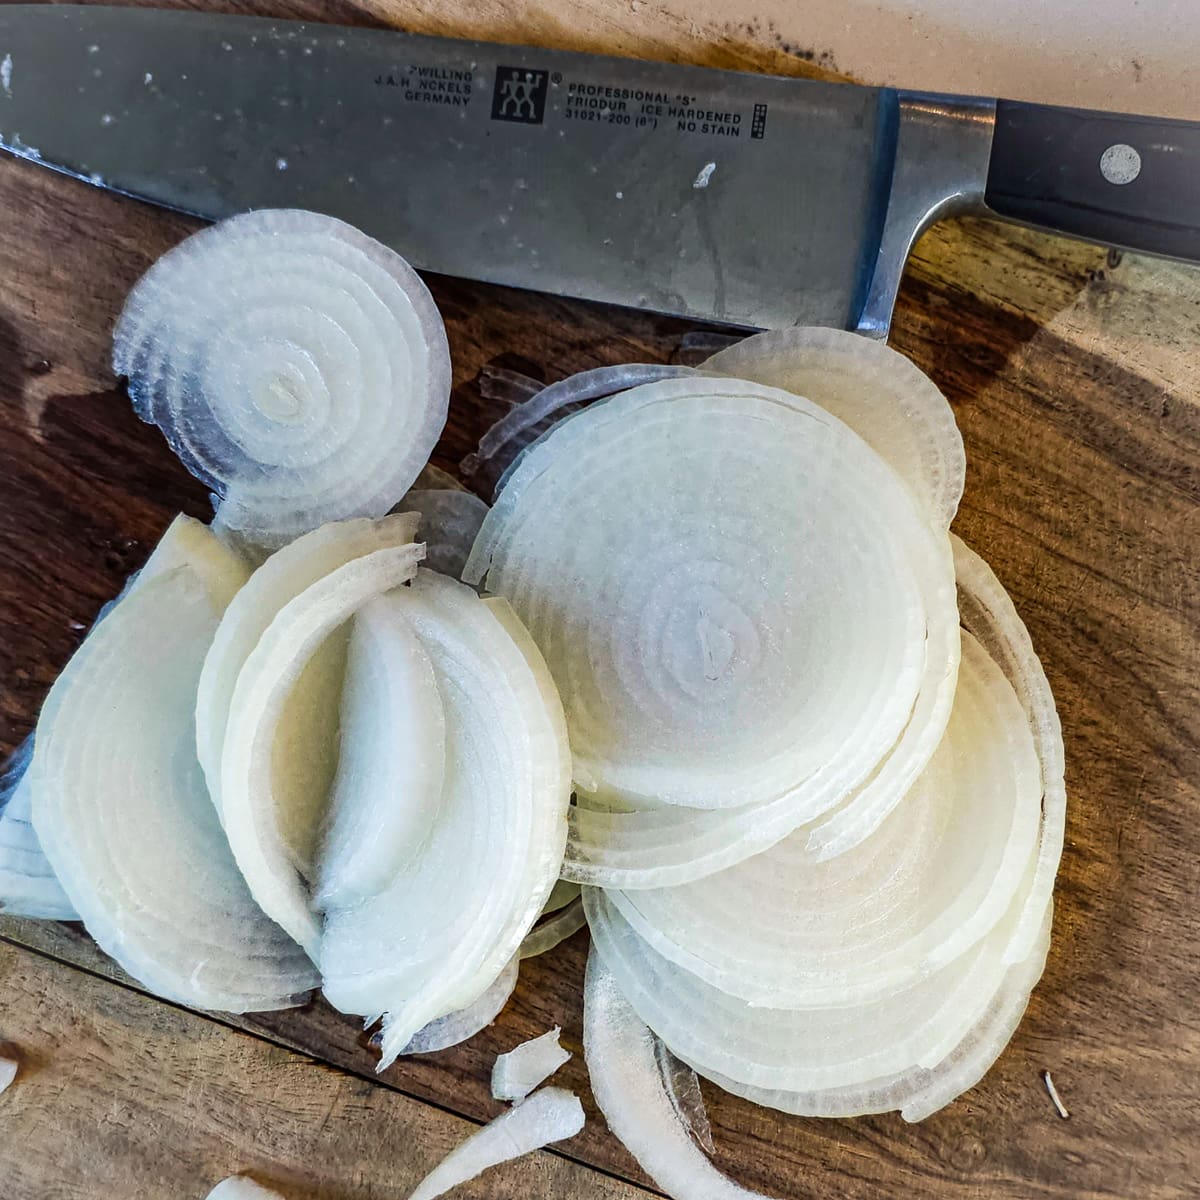 Onions sliced on a cutting board.